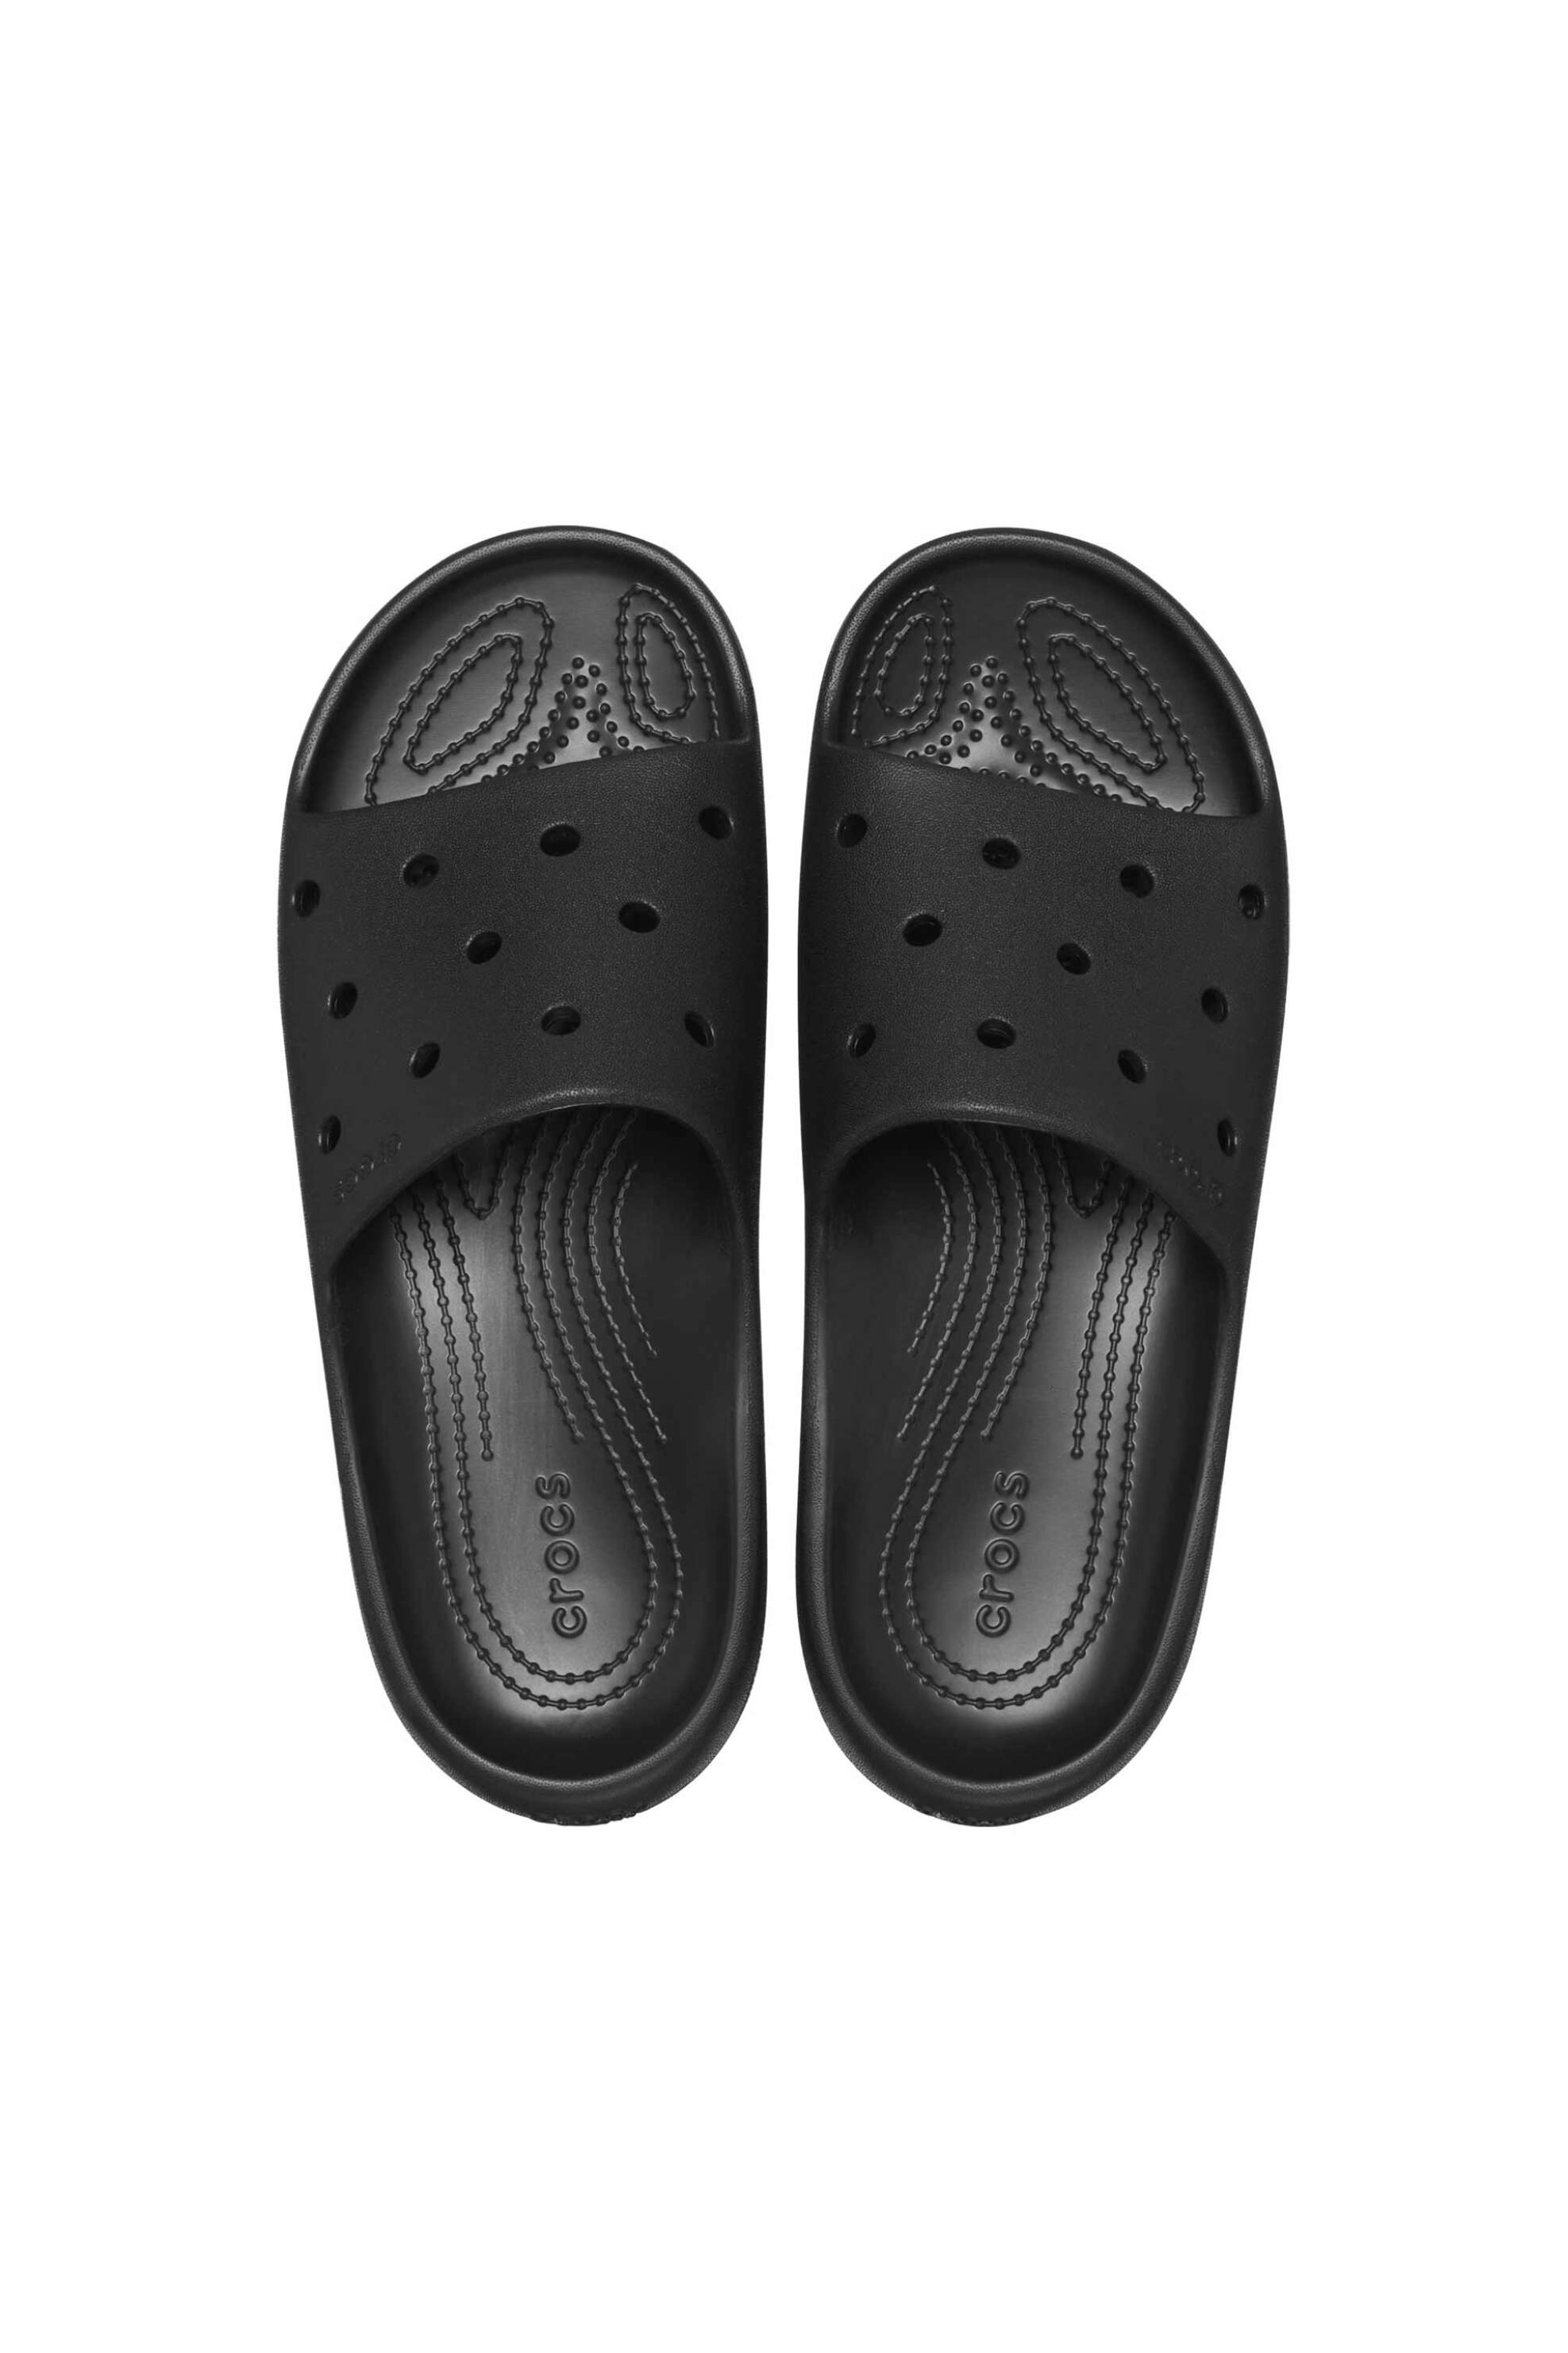 Ανδρική Μόδα > Ανδρικά Παπούτσια > Ανδρικές Παντόφλες & Σαγιονάρες Crocs unisex σαγιονάρες "Getaway Strappy" - E61129 Μαύρο